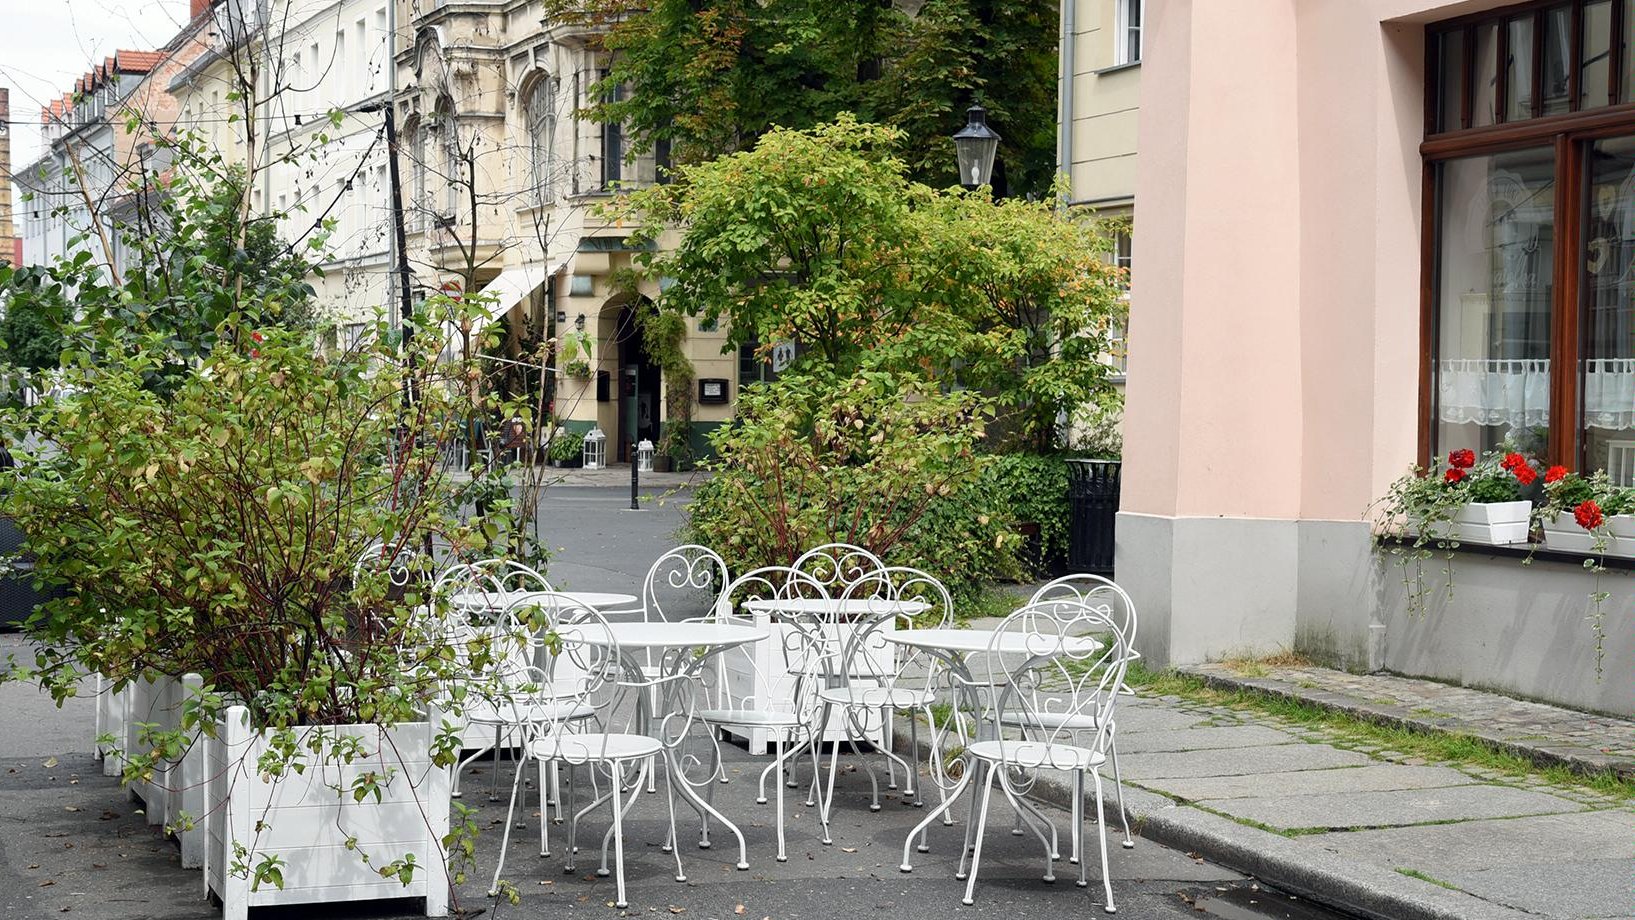 Zarząd Dróg Miejskich i Estrada Poznańska przygotowały pakiet preferencyjnych zasad dotyczących lokalizacji ogródków gastronomicznych